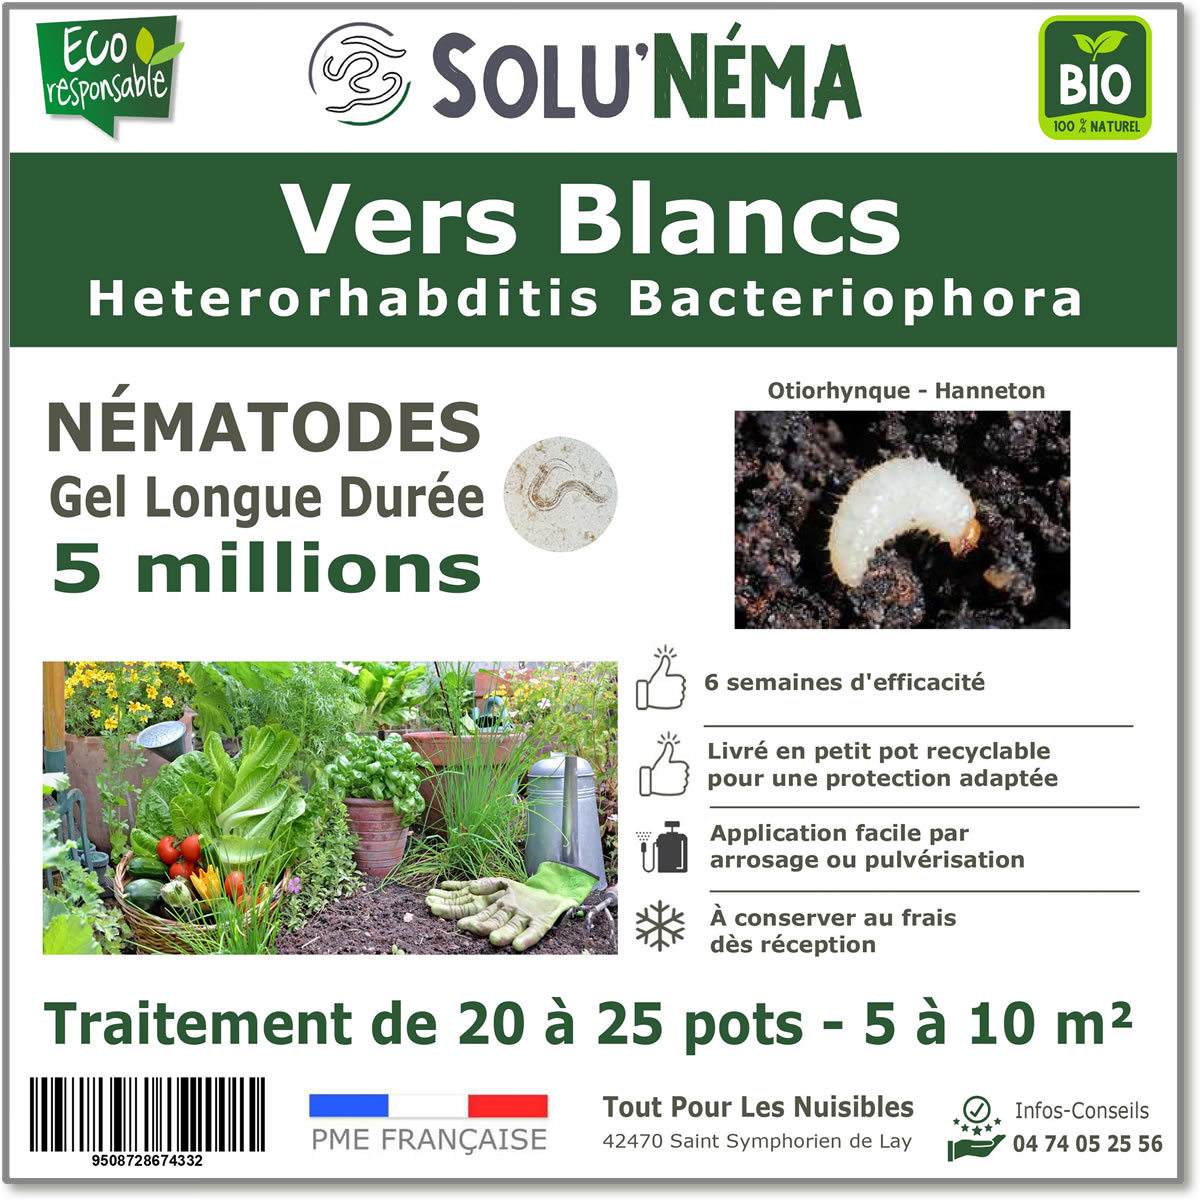 Nematoden (HB) Solunema voor witte larven - taxuskever - meikever 3 miljoen SF